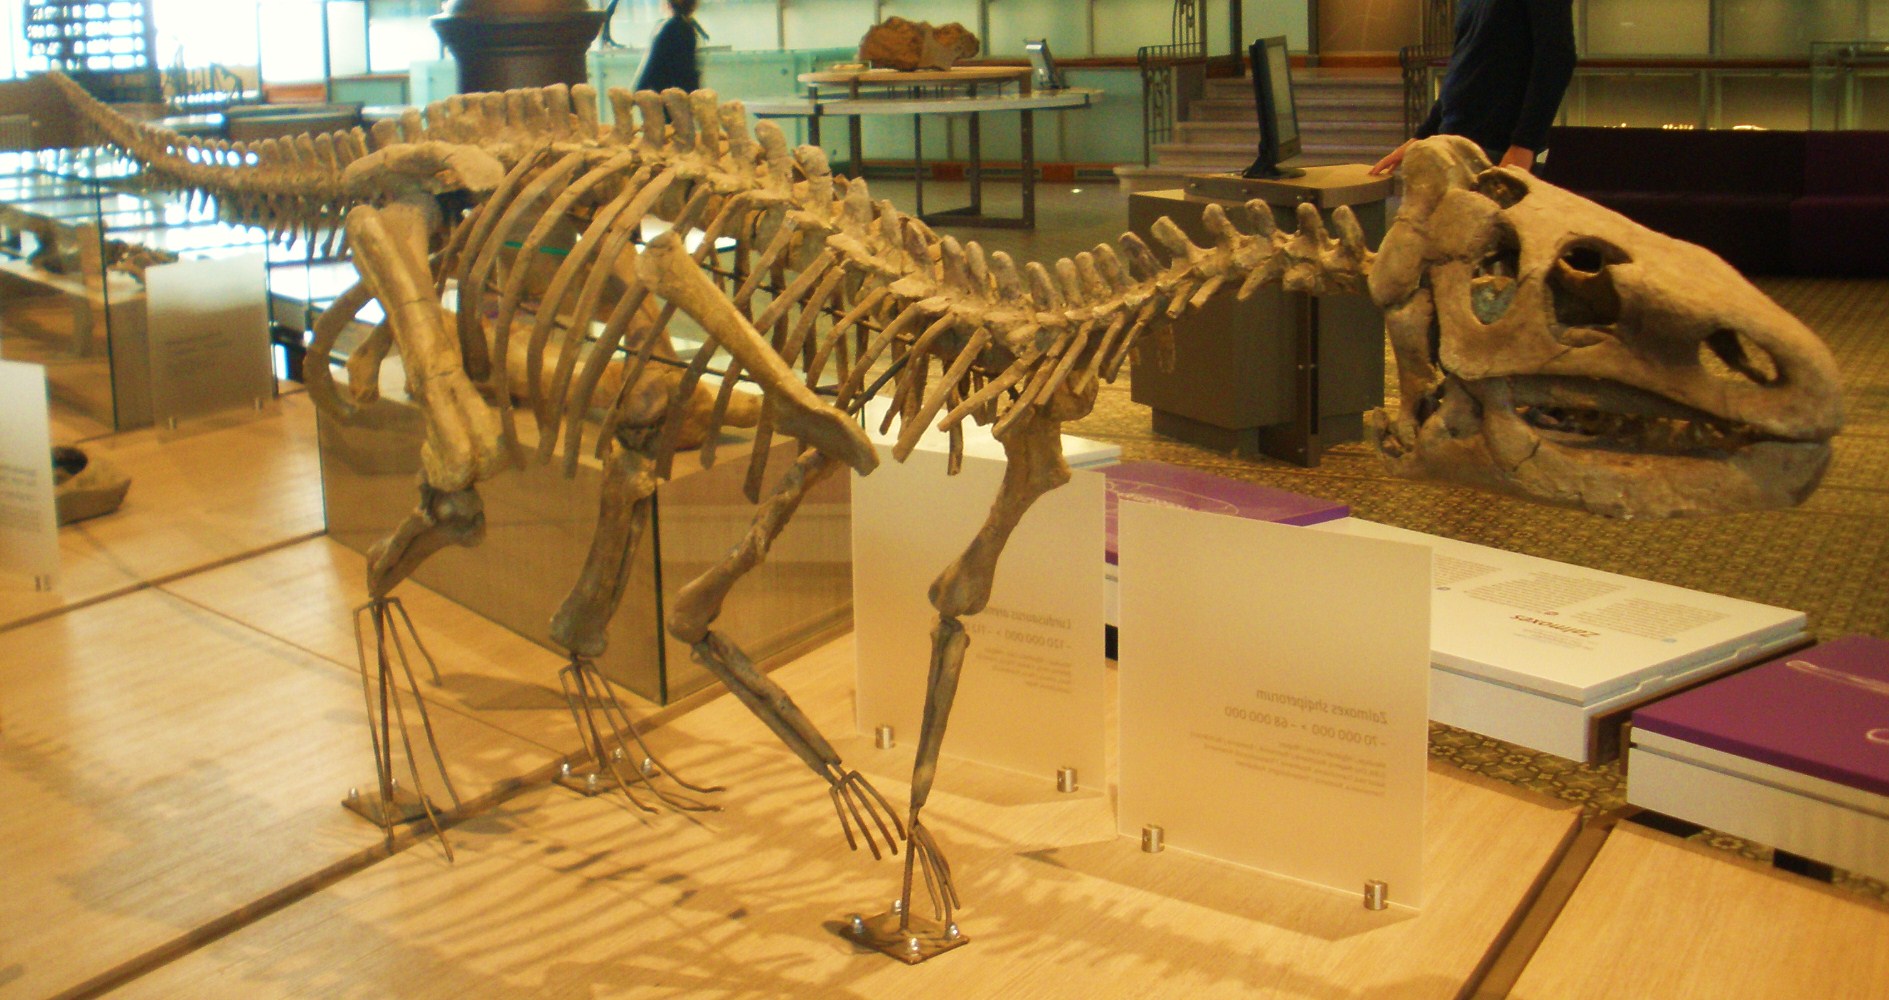 Kostra druhu Zalmoxes shqiperorum, menšího pozdně křídového ornitopoda, žijícího na území současného Rumunska. Burianosaurus augustai, žijící zhruba o 25 milionů let dříve na našem dnešním území, mohl vypadat podobně. Zde rekonstrukce kostry v expozi